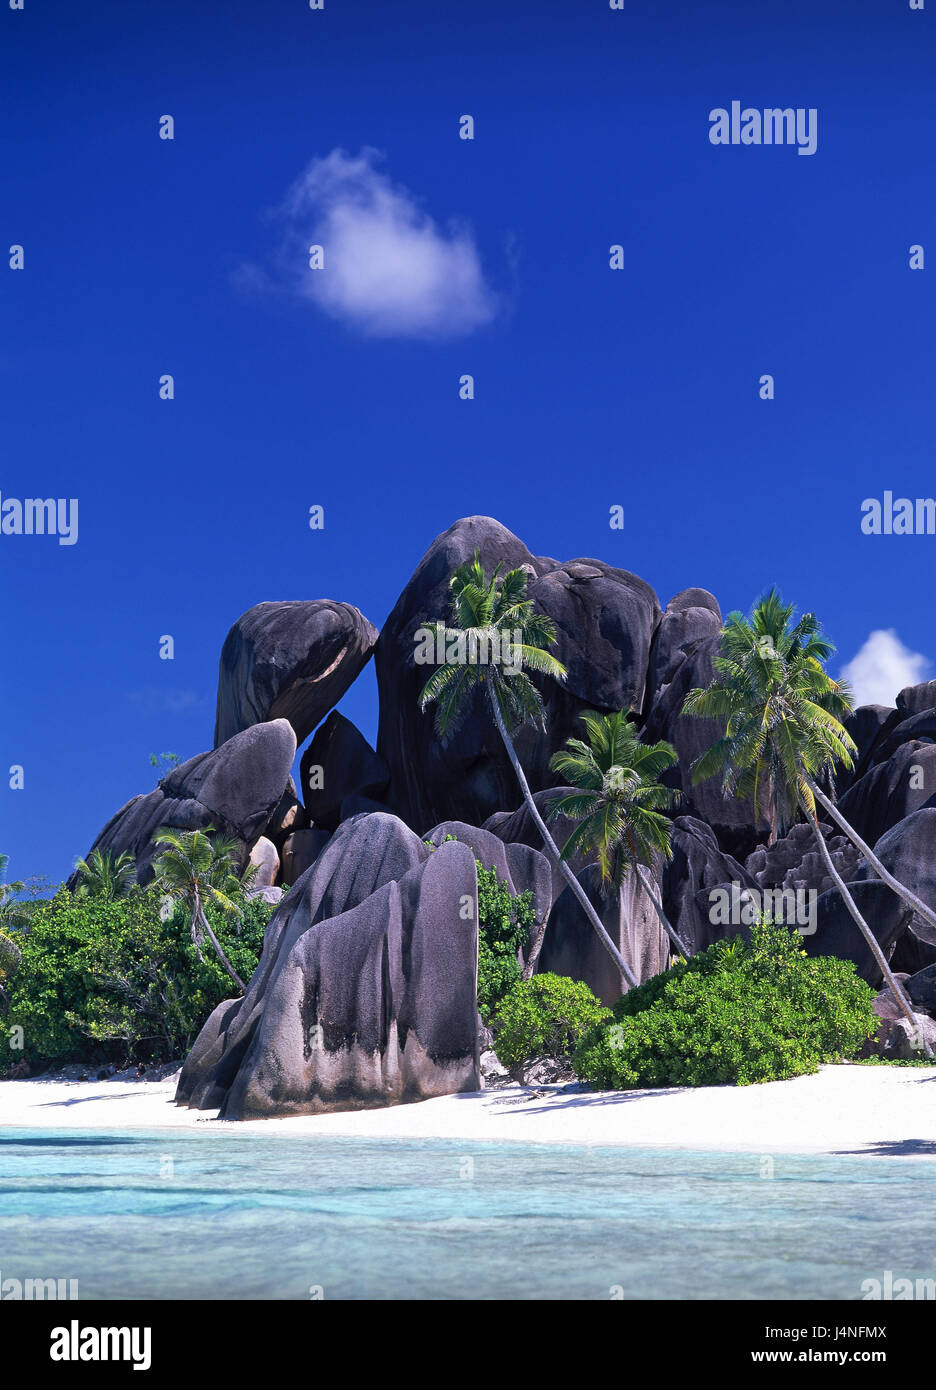 Las islas Seychelles, La Digue, playa Anse Cocos, rock, palmas, estado insular, isla, costa, roca de granito, nadie, agua, claramente, el azul turquesa, el descanso, el silencio, la soledad, el destino, vacaciones, vacaciones Paradise, playa de ensueño, sueño de vacaciones, isla paraíso, Dream Island, Foto de stock